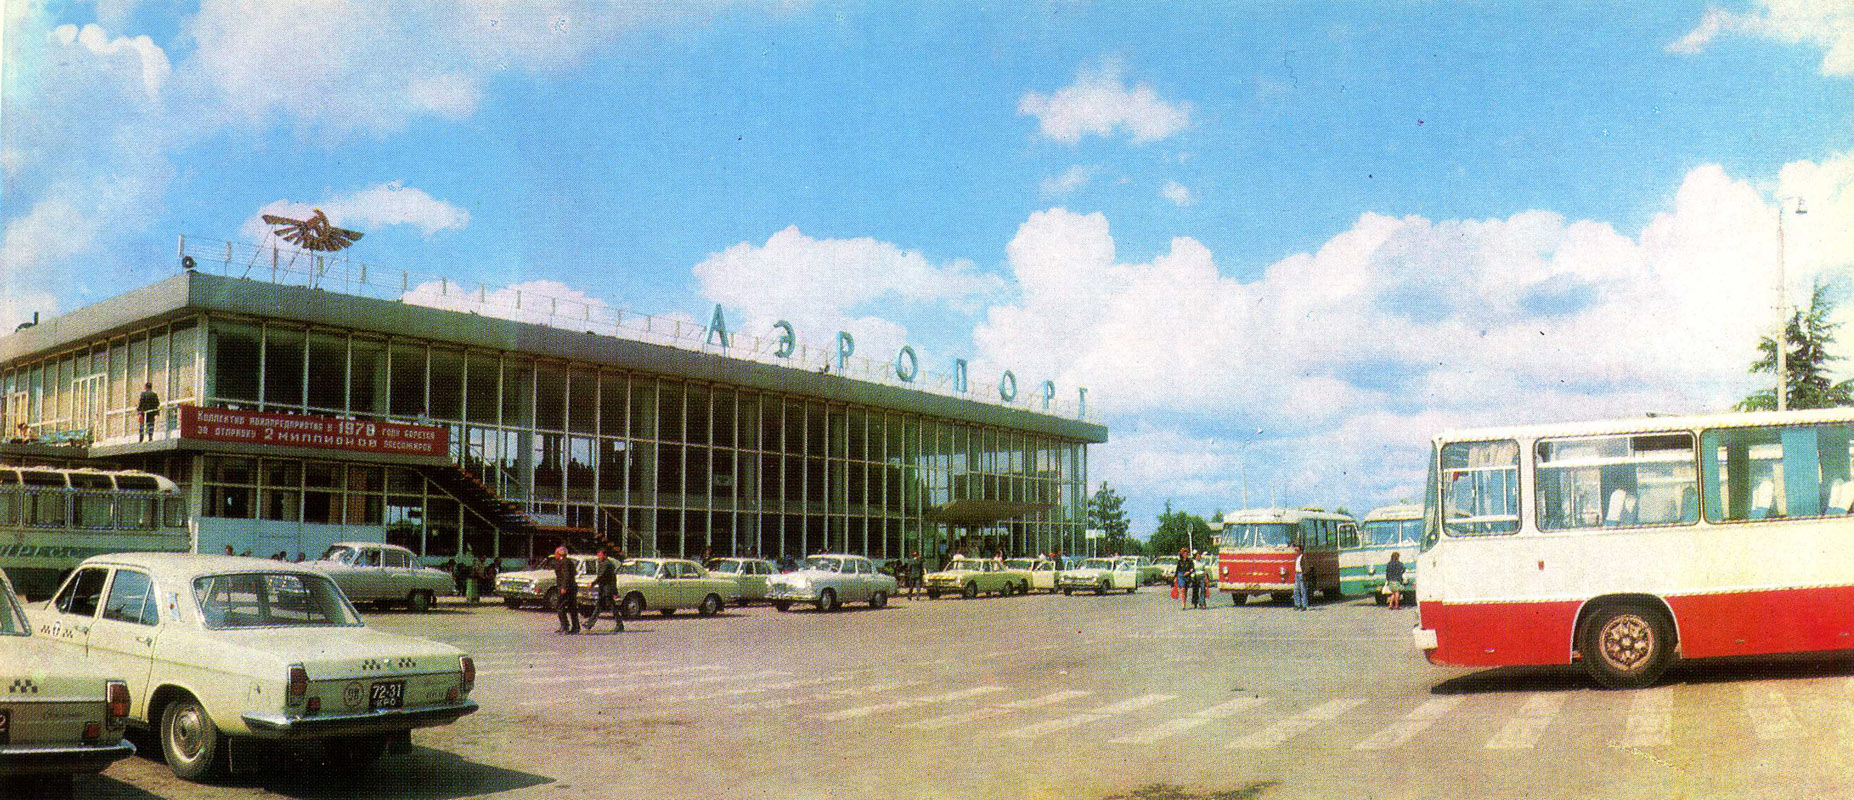 Симферополь старый аэропорт